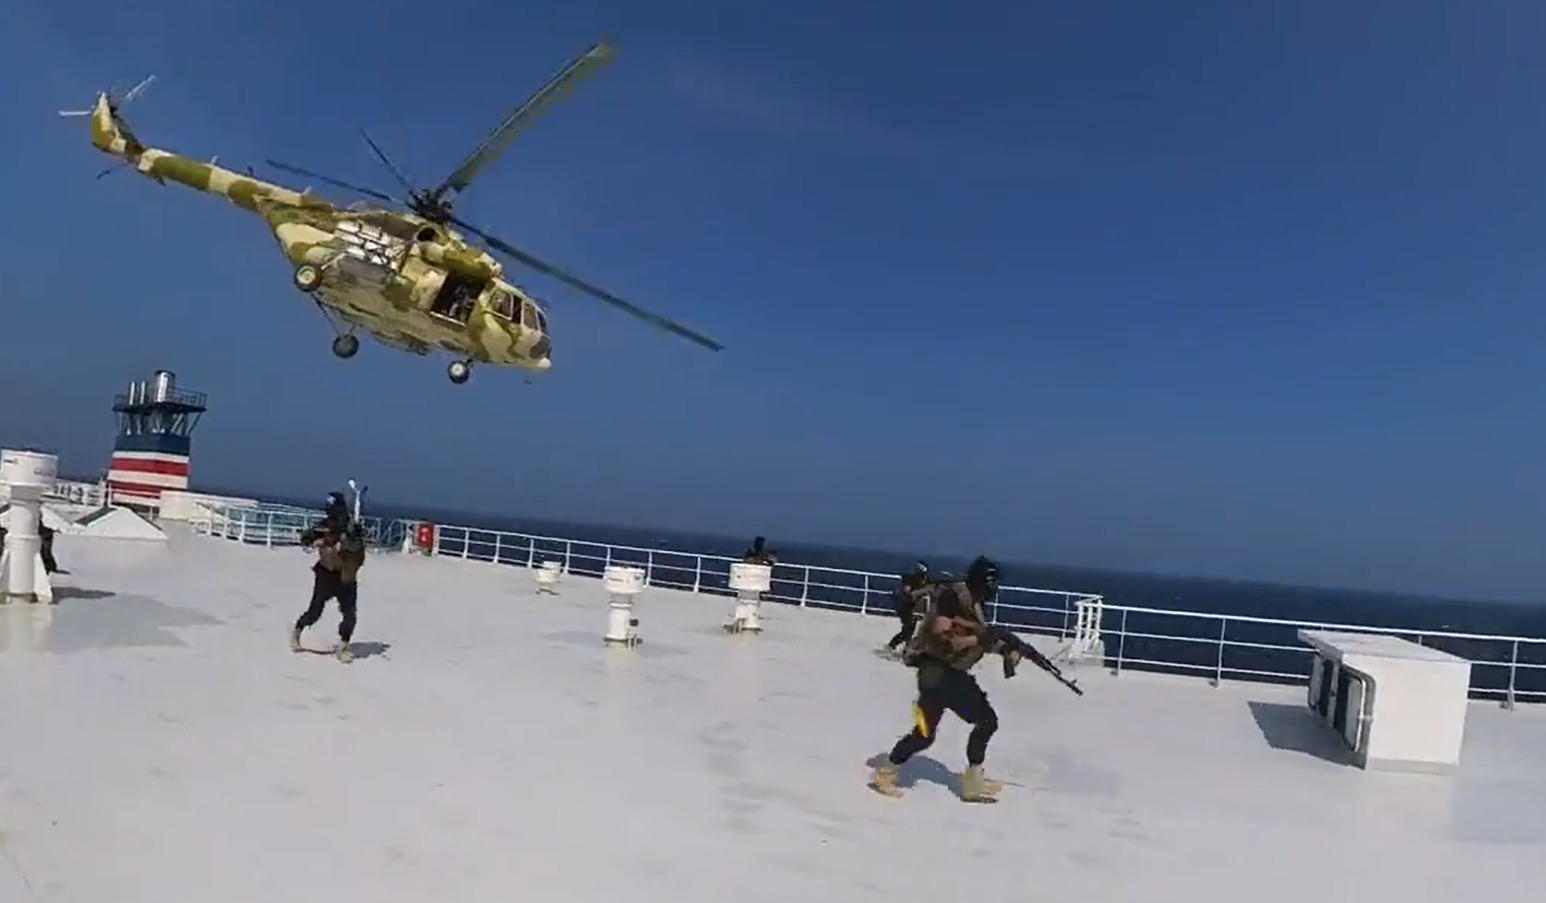 Helikopterrel rászálltak a muszlim terroristák a teherhajóra, mert azt el akarták téríteni (VIDEÓ)